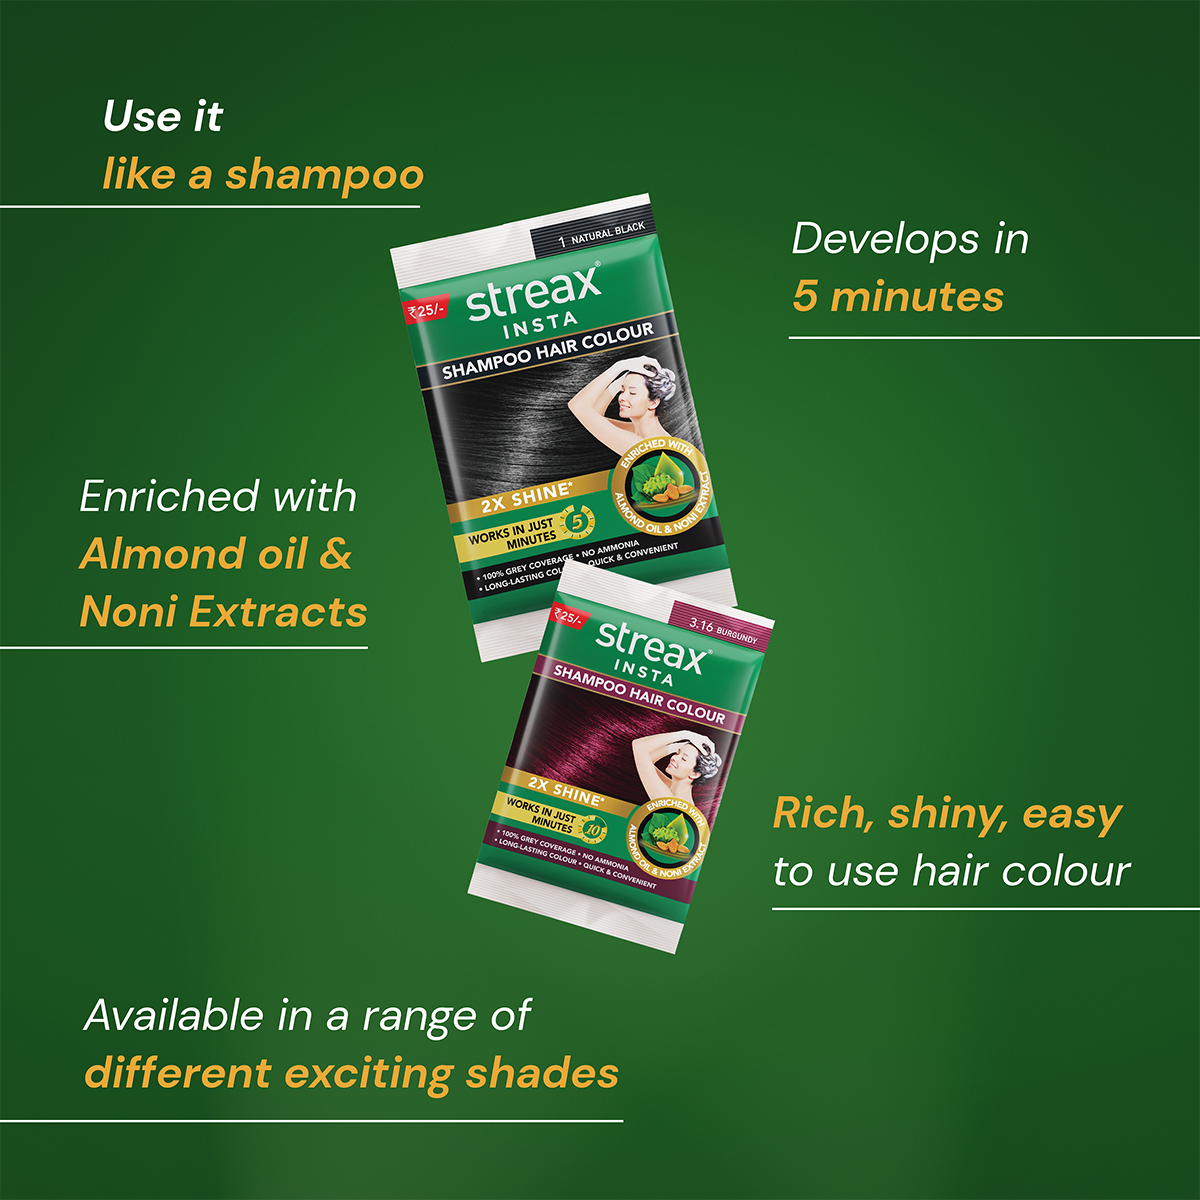 Streax Shampoo Hair Colour